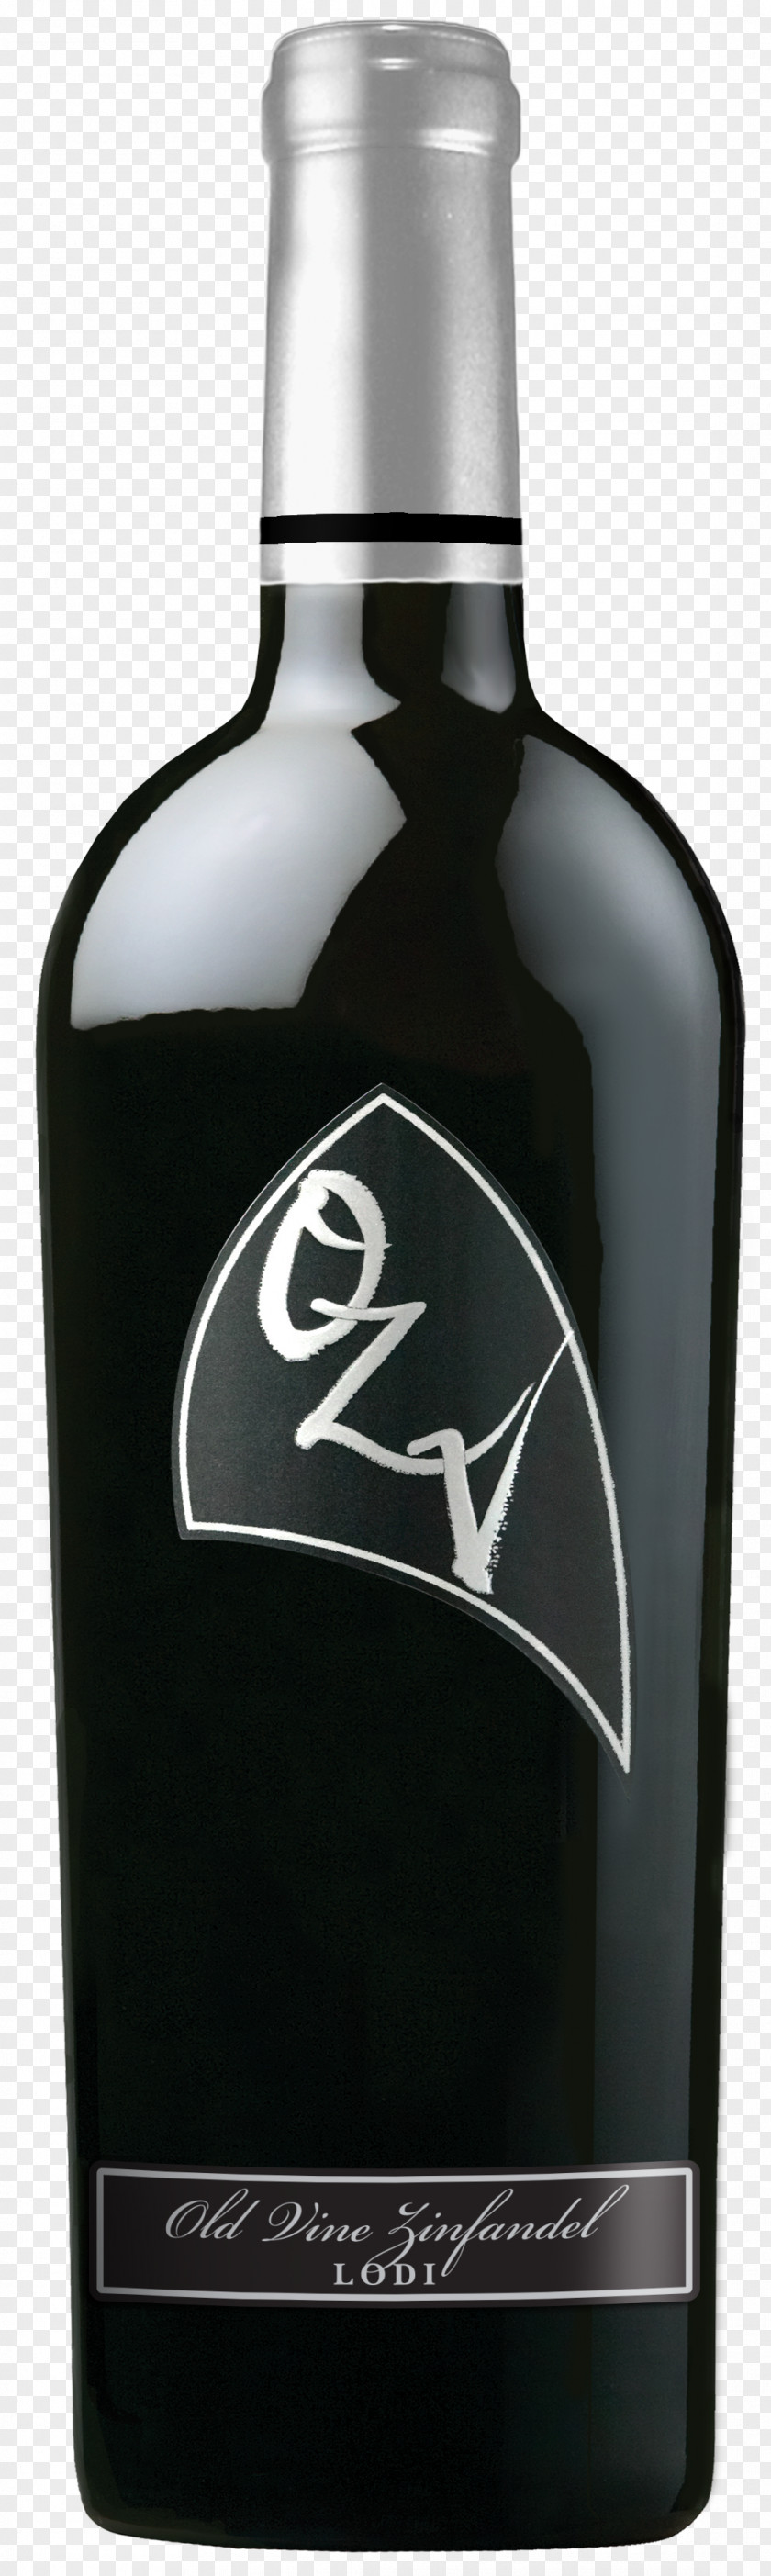 Wine Zinfandel Lodi Oak Ridge Winery Distilled Beverage PNG